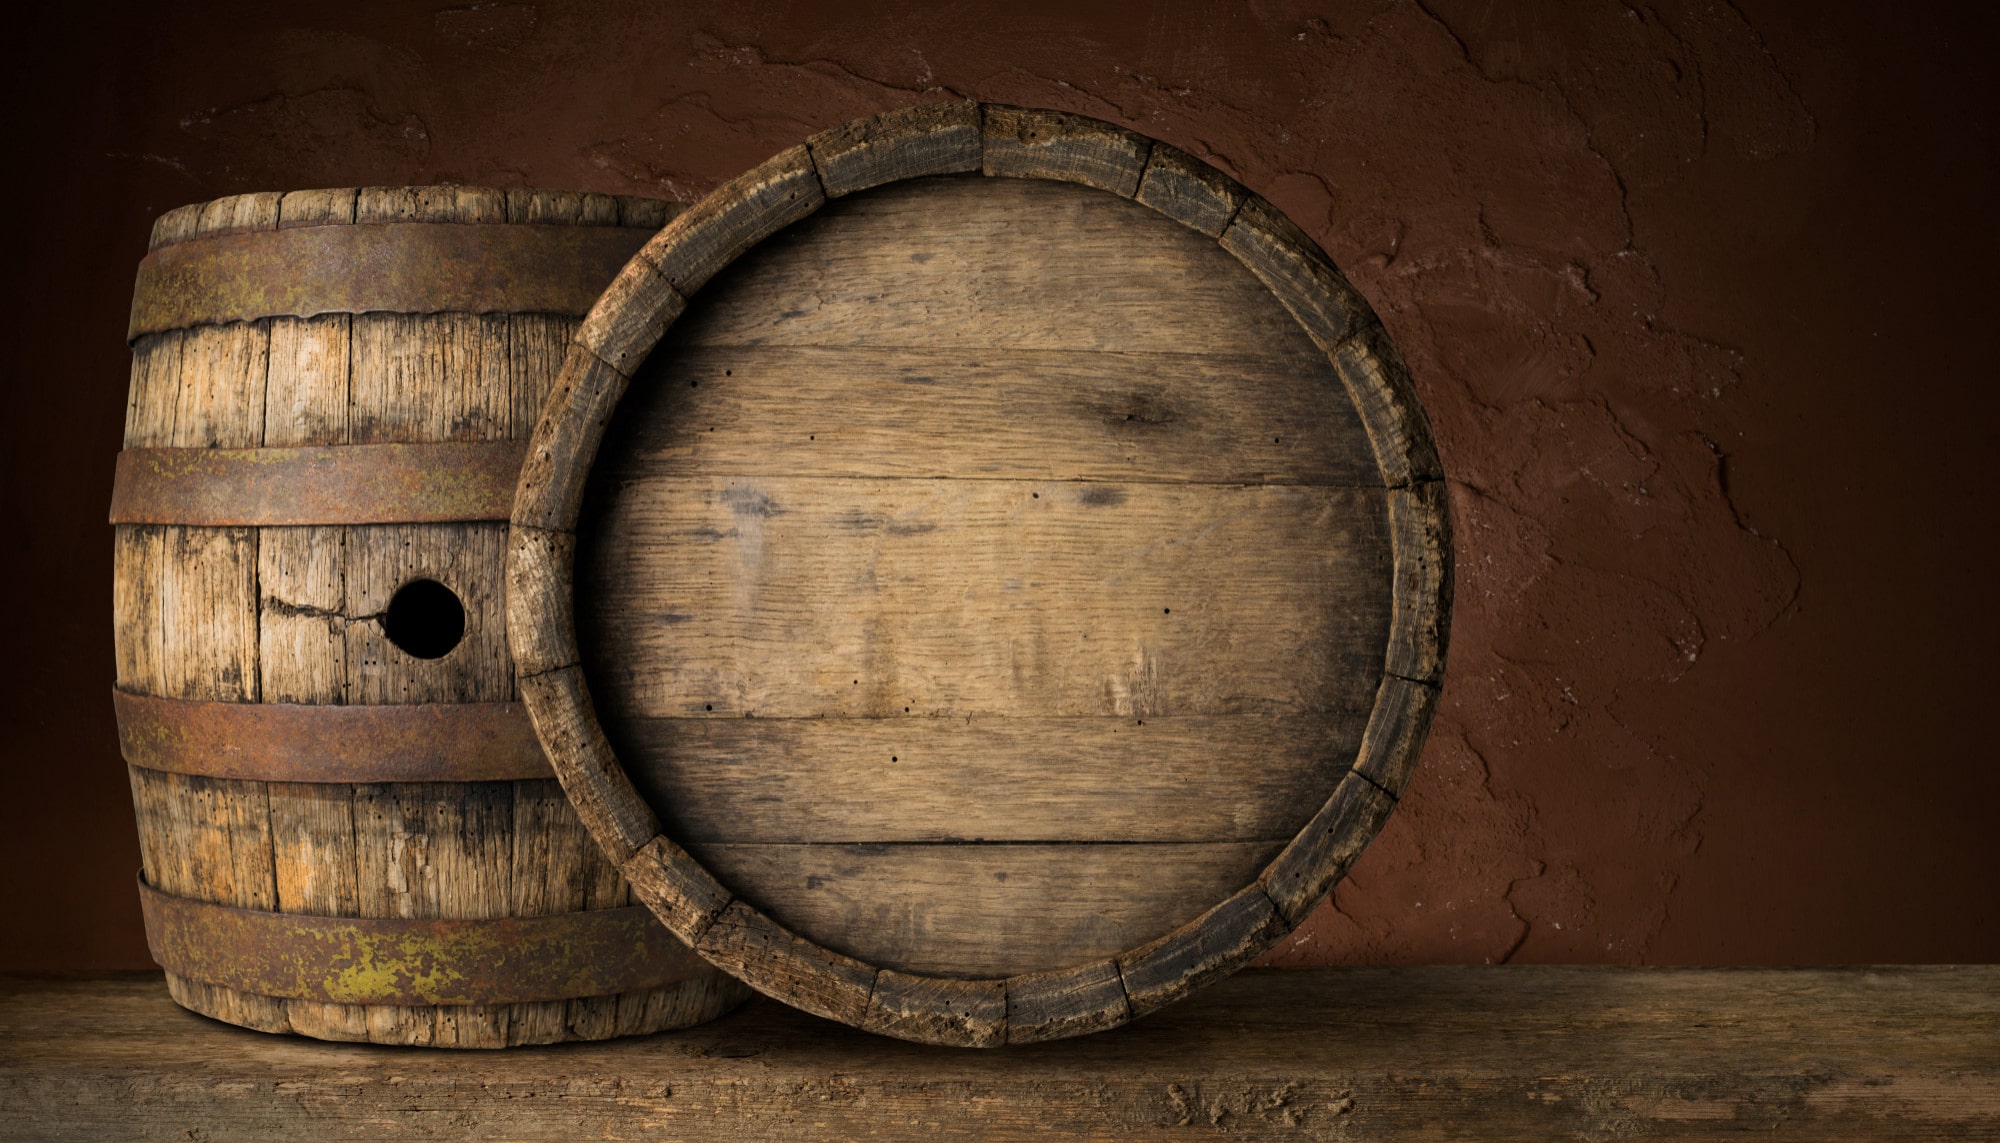 Vergeten vat whisky voor recordbedrag van 1,2 miljoen euro geveild